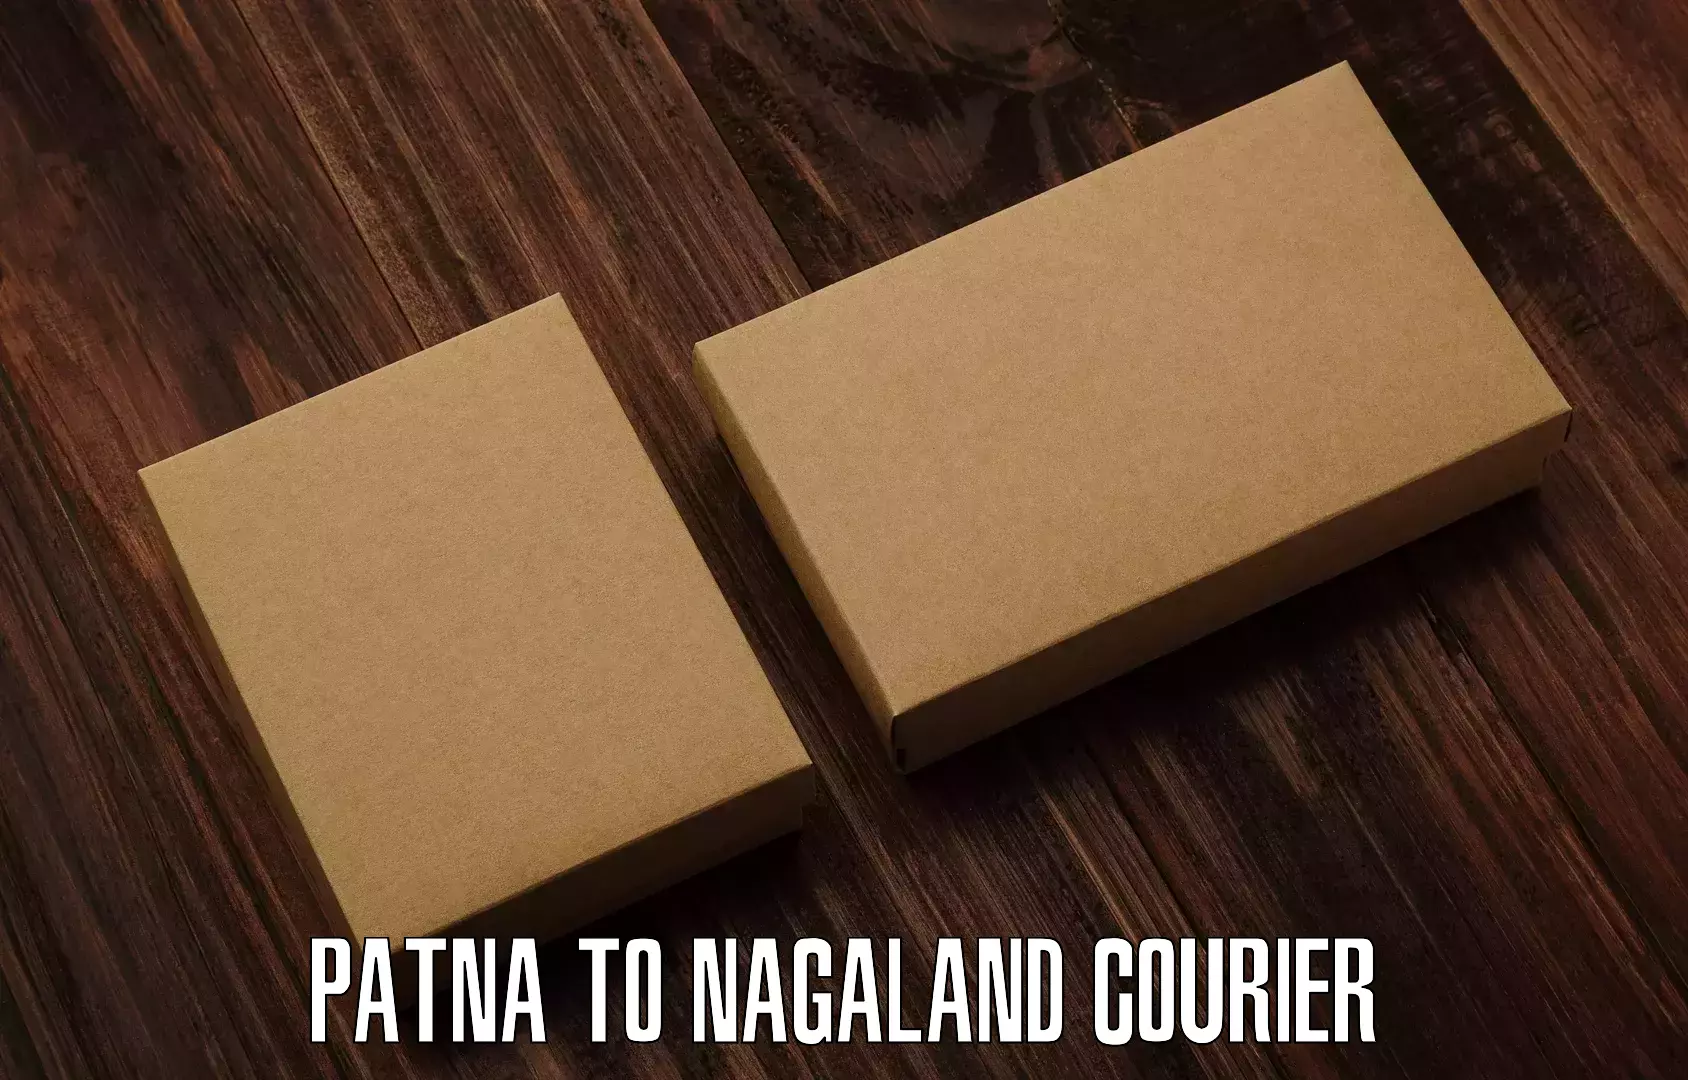 Efficient logistics management Patna to Nagaland